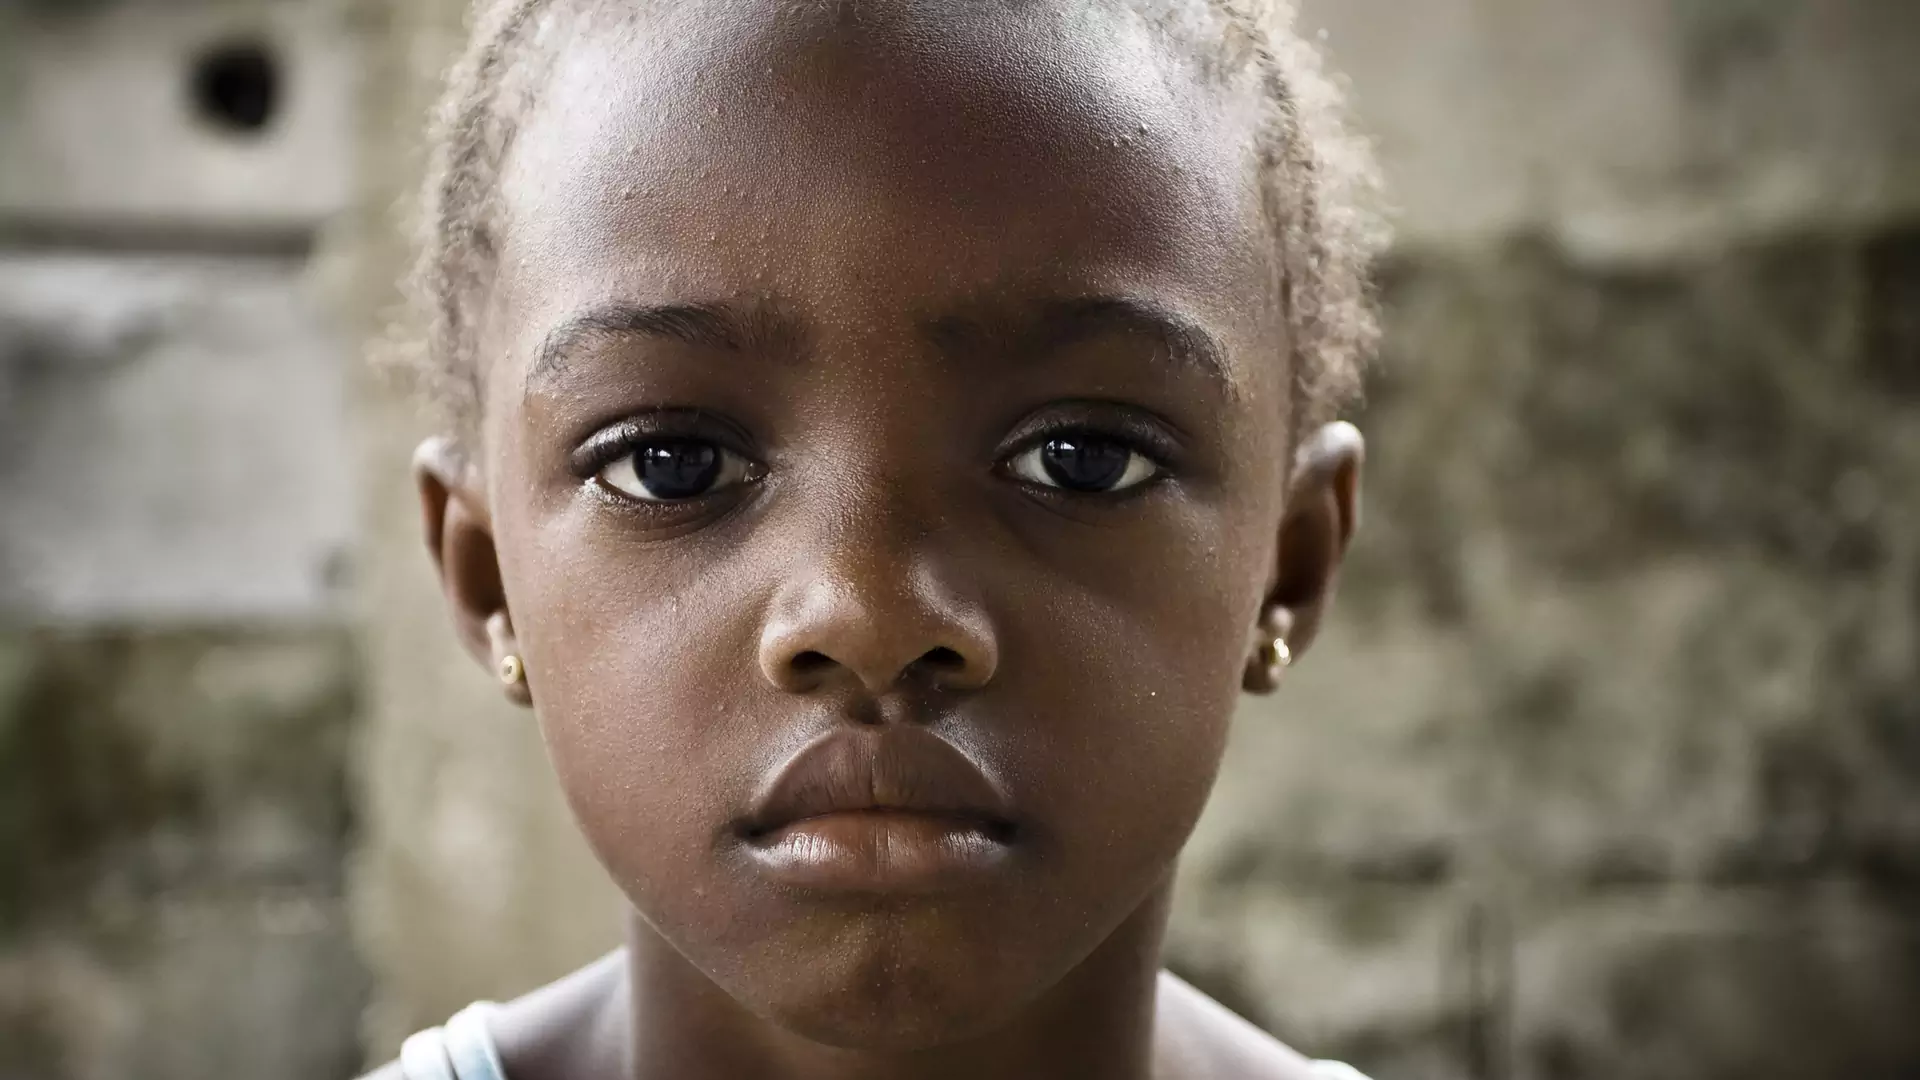 Dlaczego nie powinniśmy robić zdjęć z afrykańskimi dziećmi, o których historii nie mamy pojęcia?